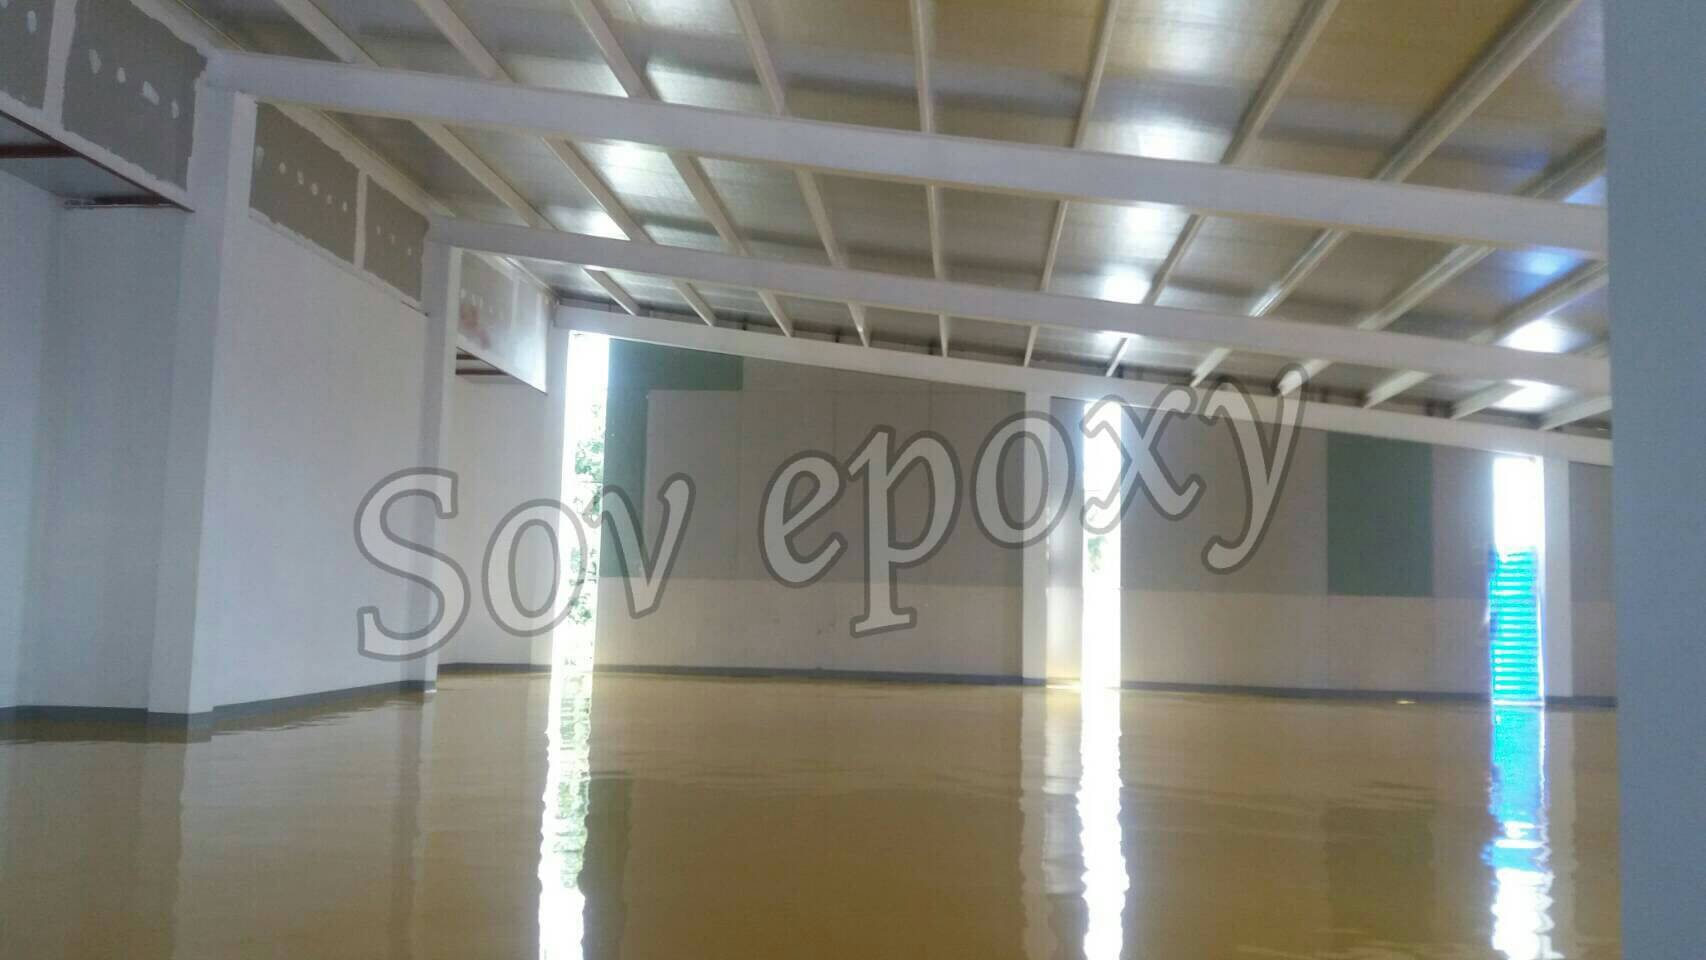 ผลงาน SOV Epoxy 30